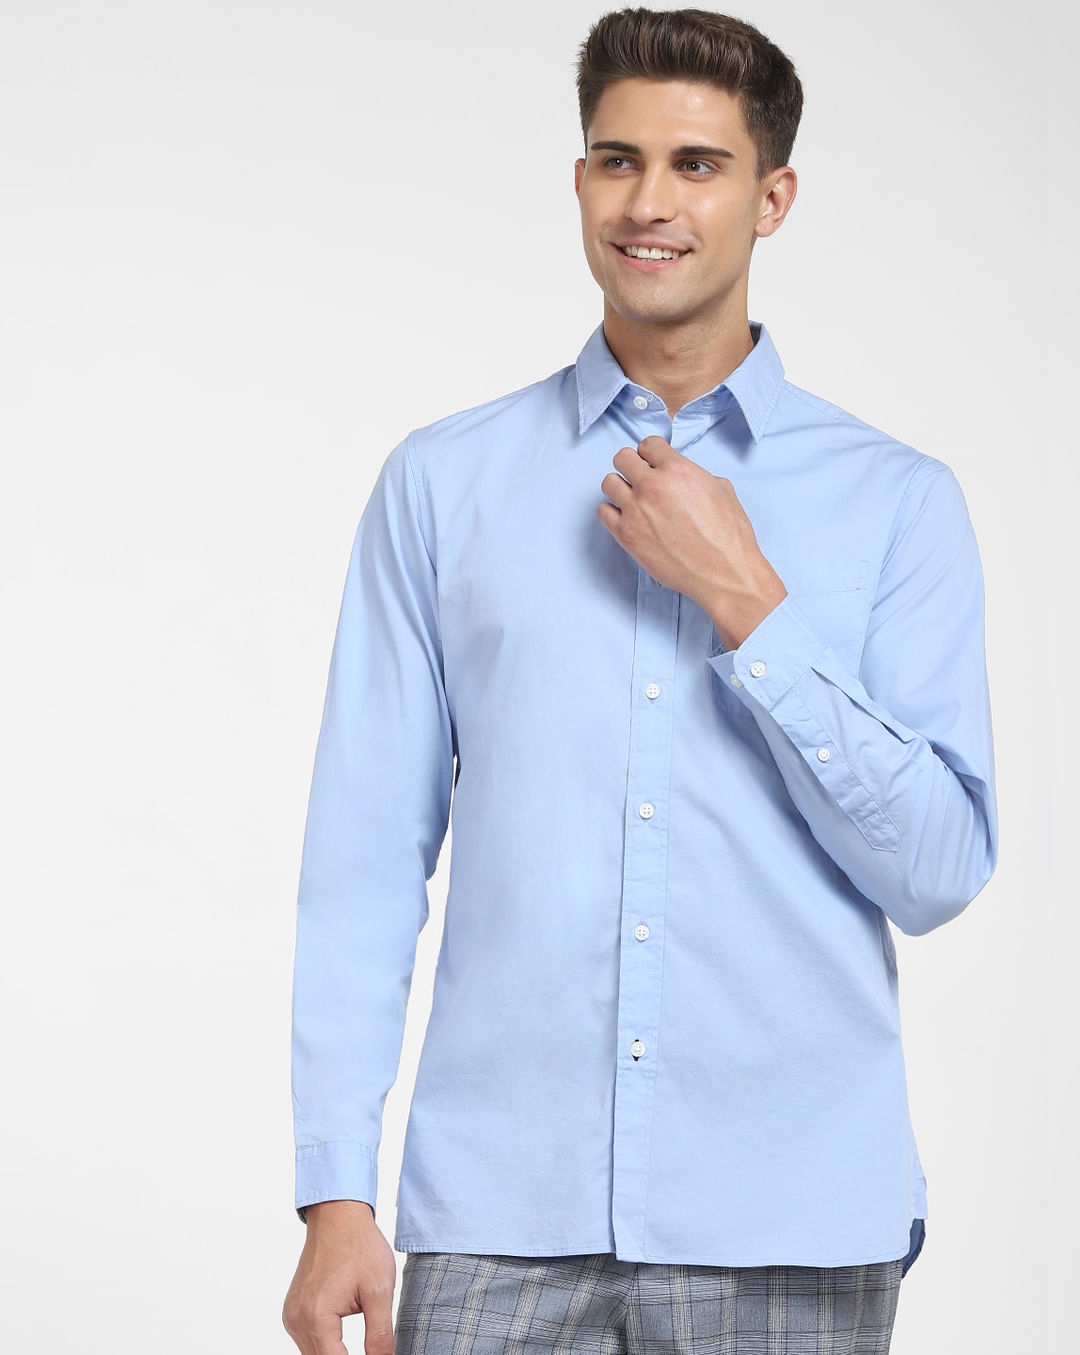 Buy Light Blue Formal at HOMME for Online Full Shirt Men SELECTED |228538603 Sleeves